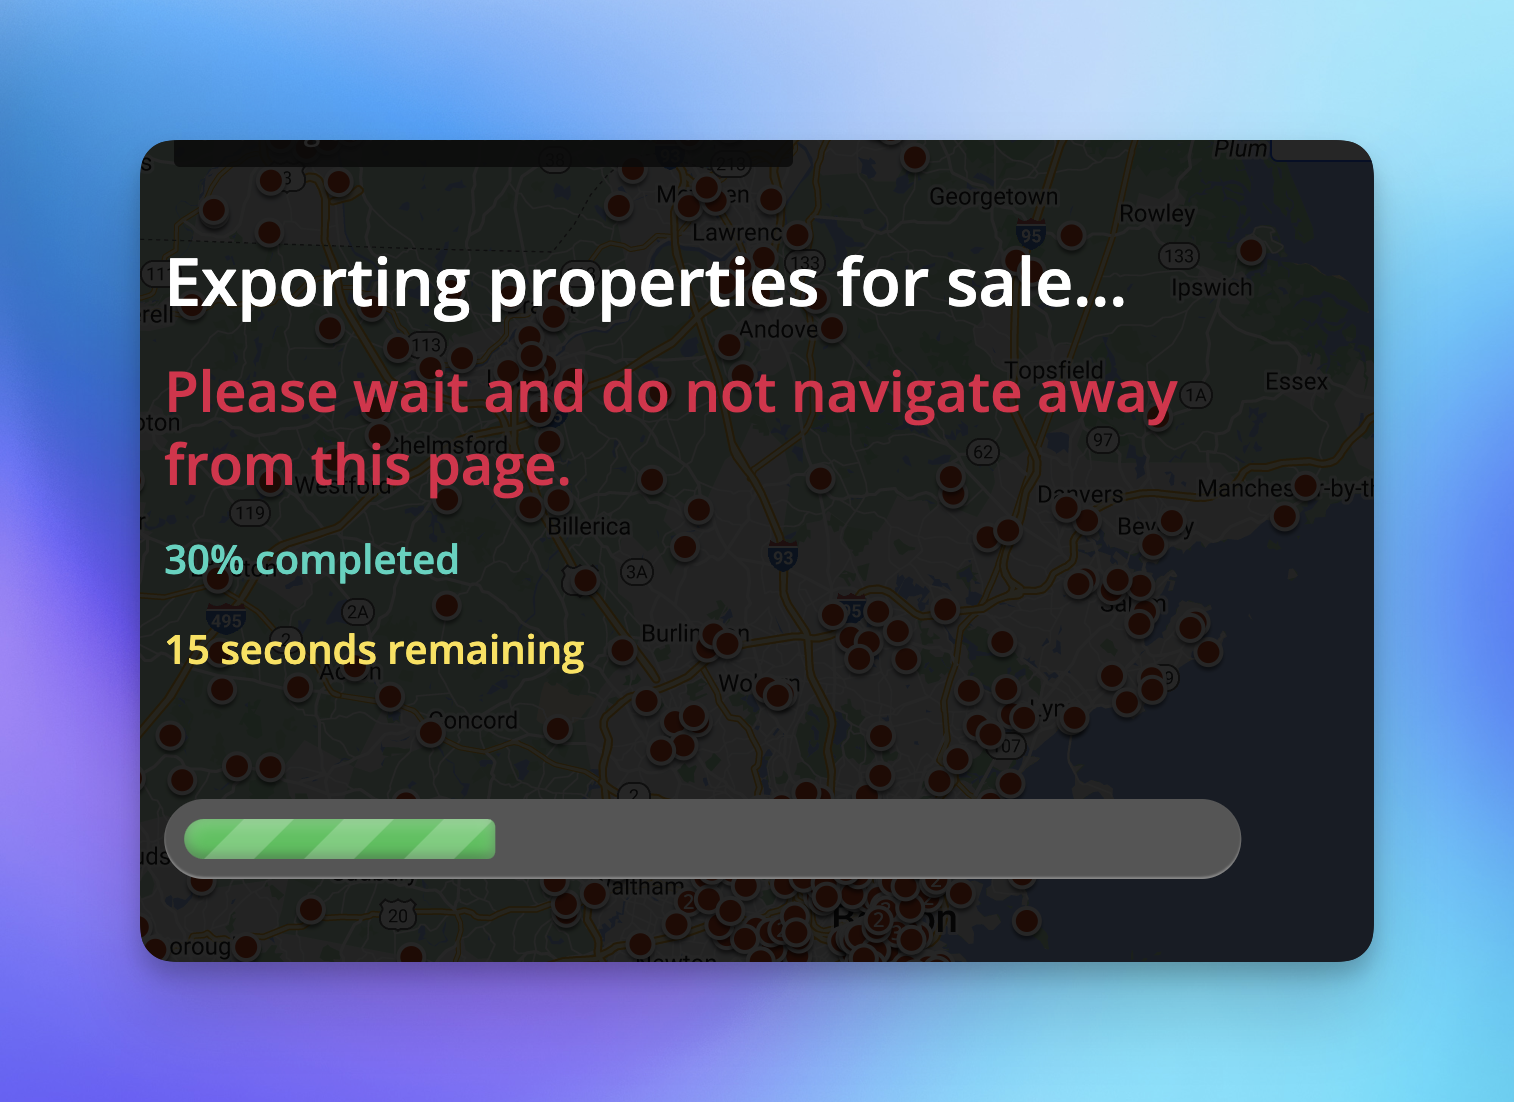 Export in progress message